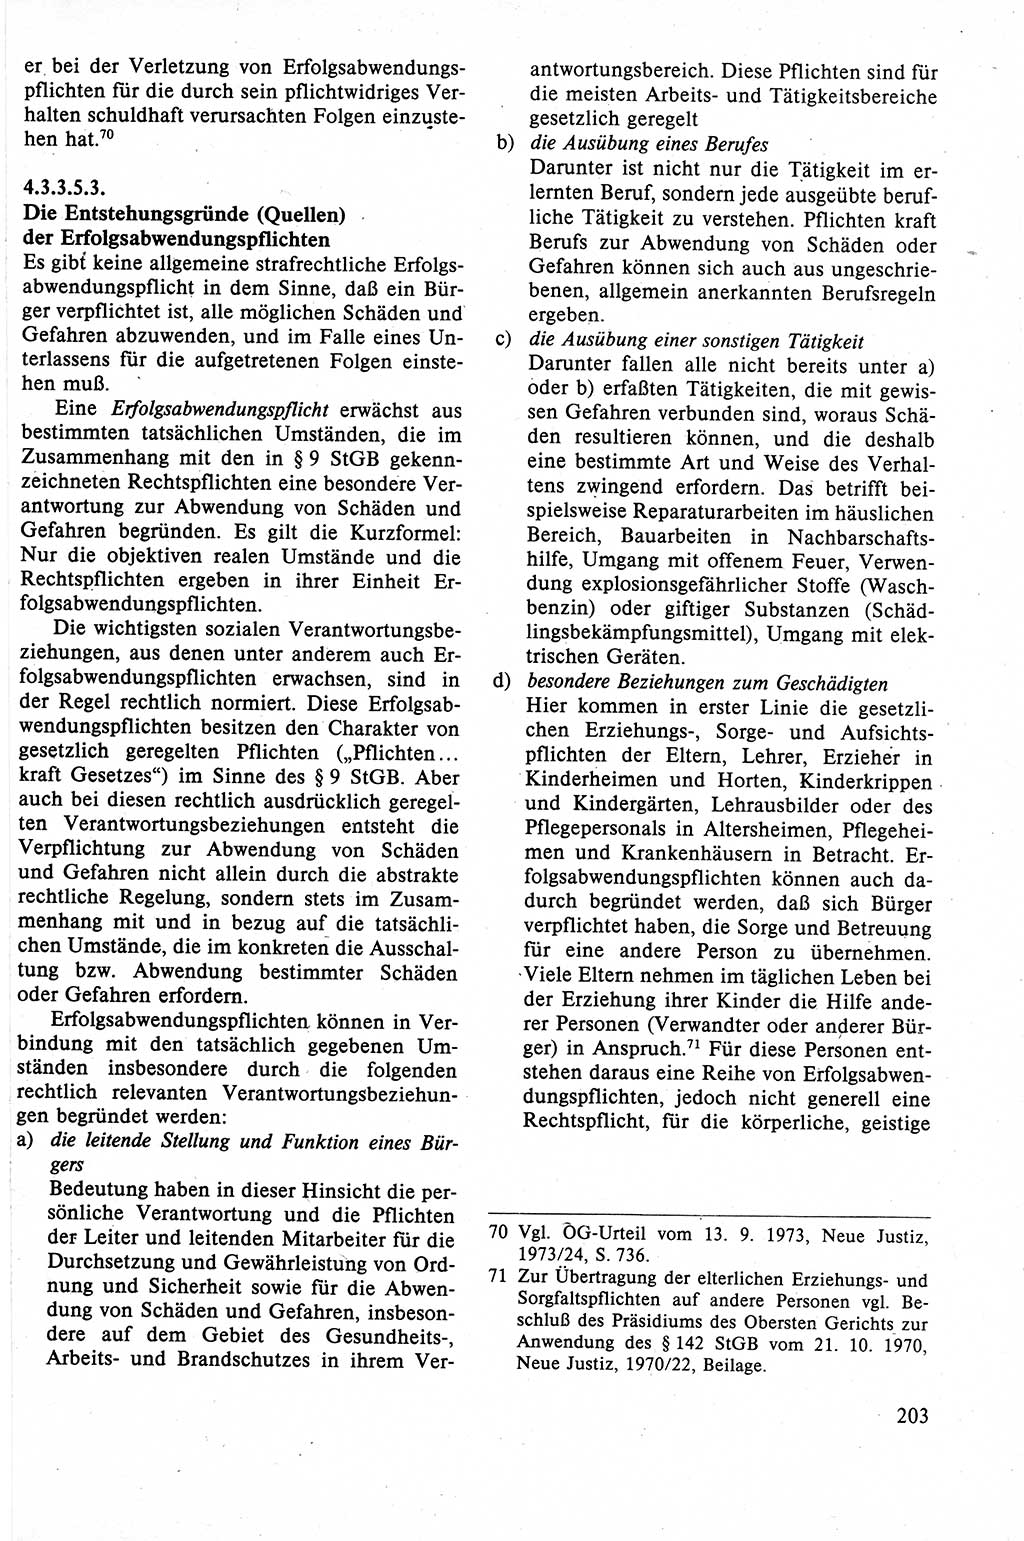 Strafrecht der DDR (Deutsche Demokratische Republik), Lehrbuch 1988, Seite 203 (Strafr. DDR Lb. 1988, S. 203)